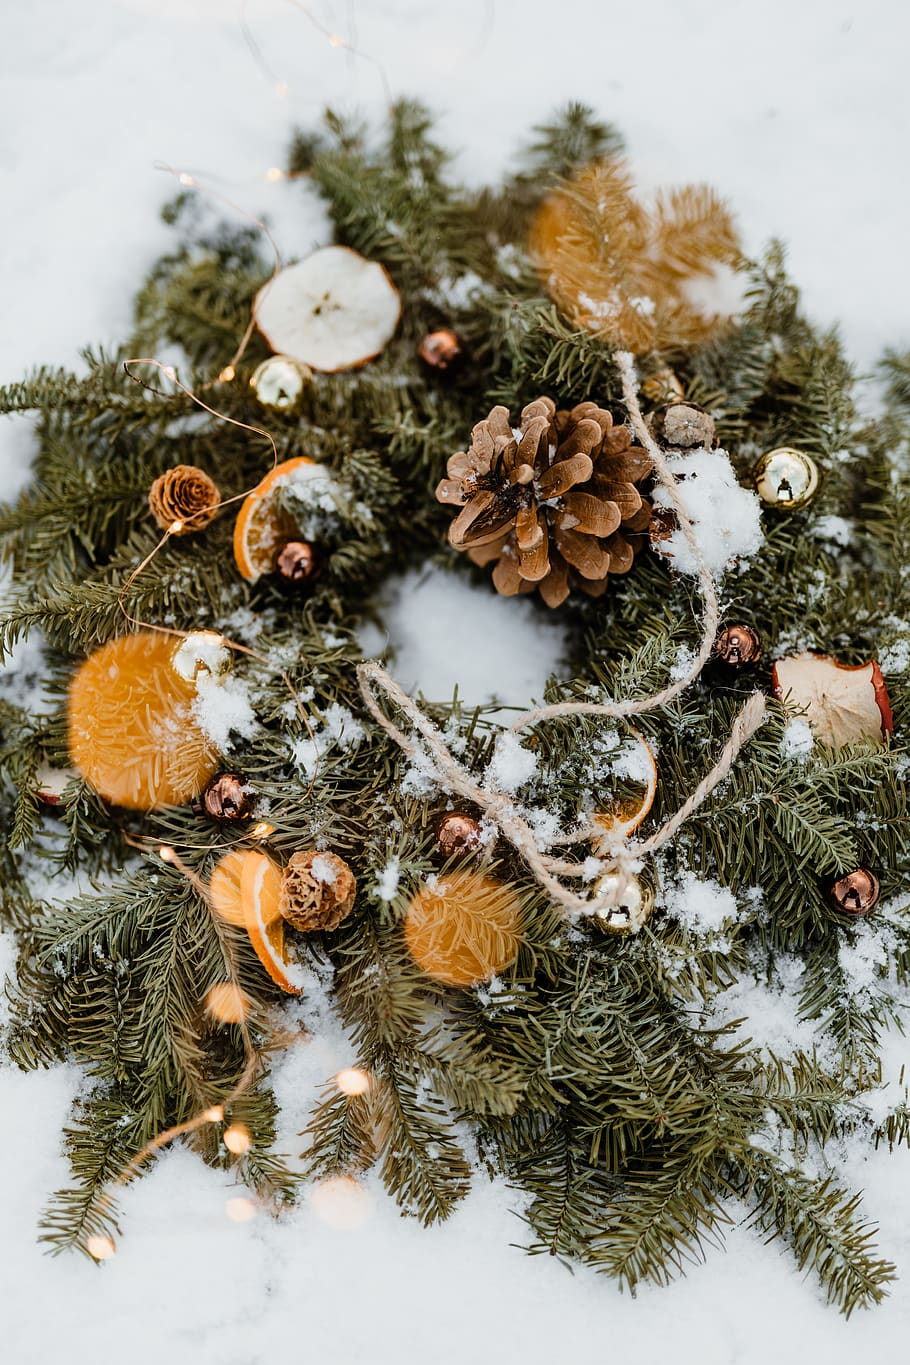 navidad, decoración, decoraciones, diciembre, nieve, invierno, guirnalda, decoración navideña, árbol, árbol de navidad